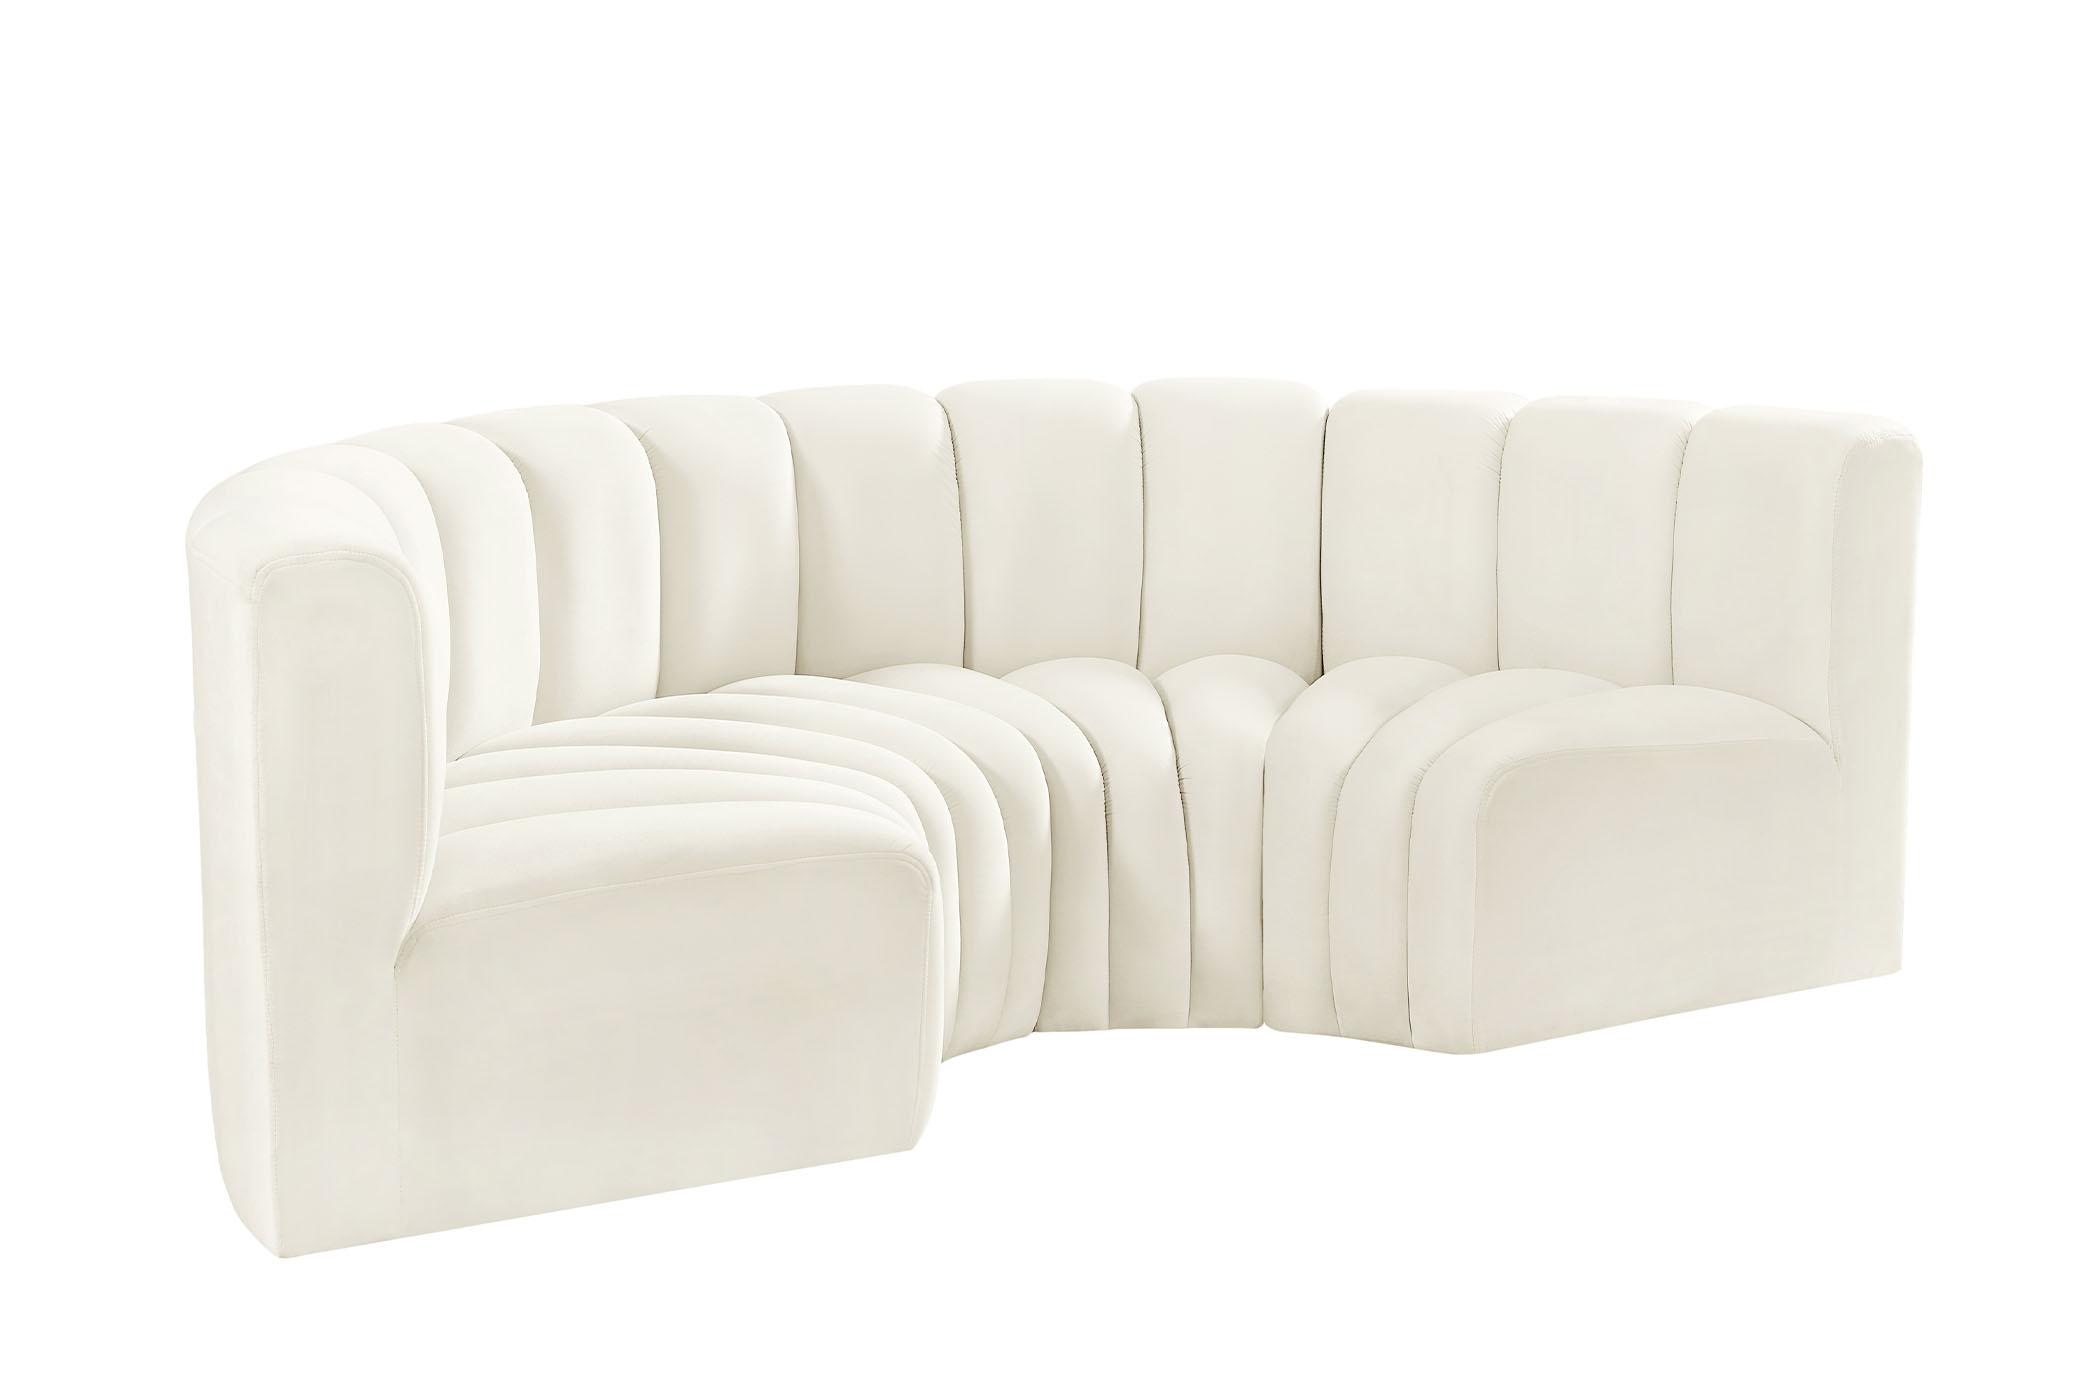 Contemporary, Modern Modular Sectional Sofa ARC 103Cream-S4C 103Cream-S4C in Cream Velvet